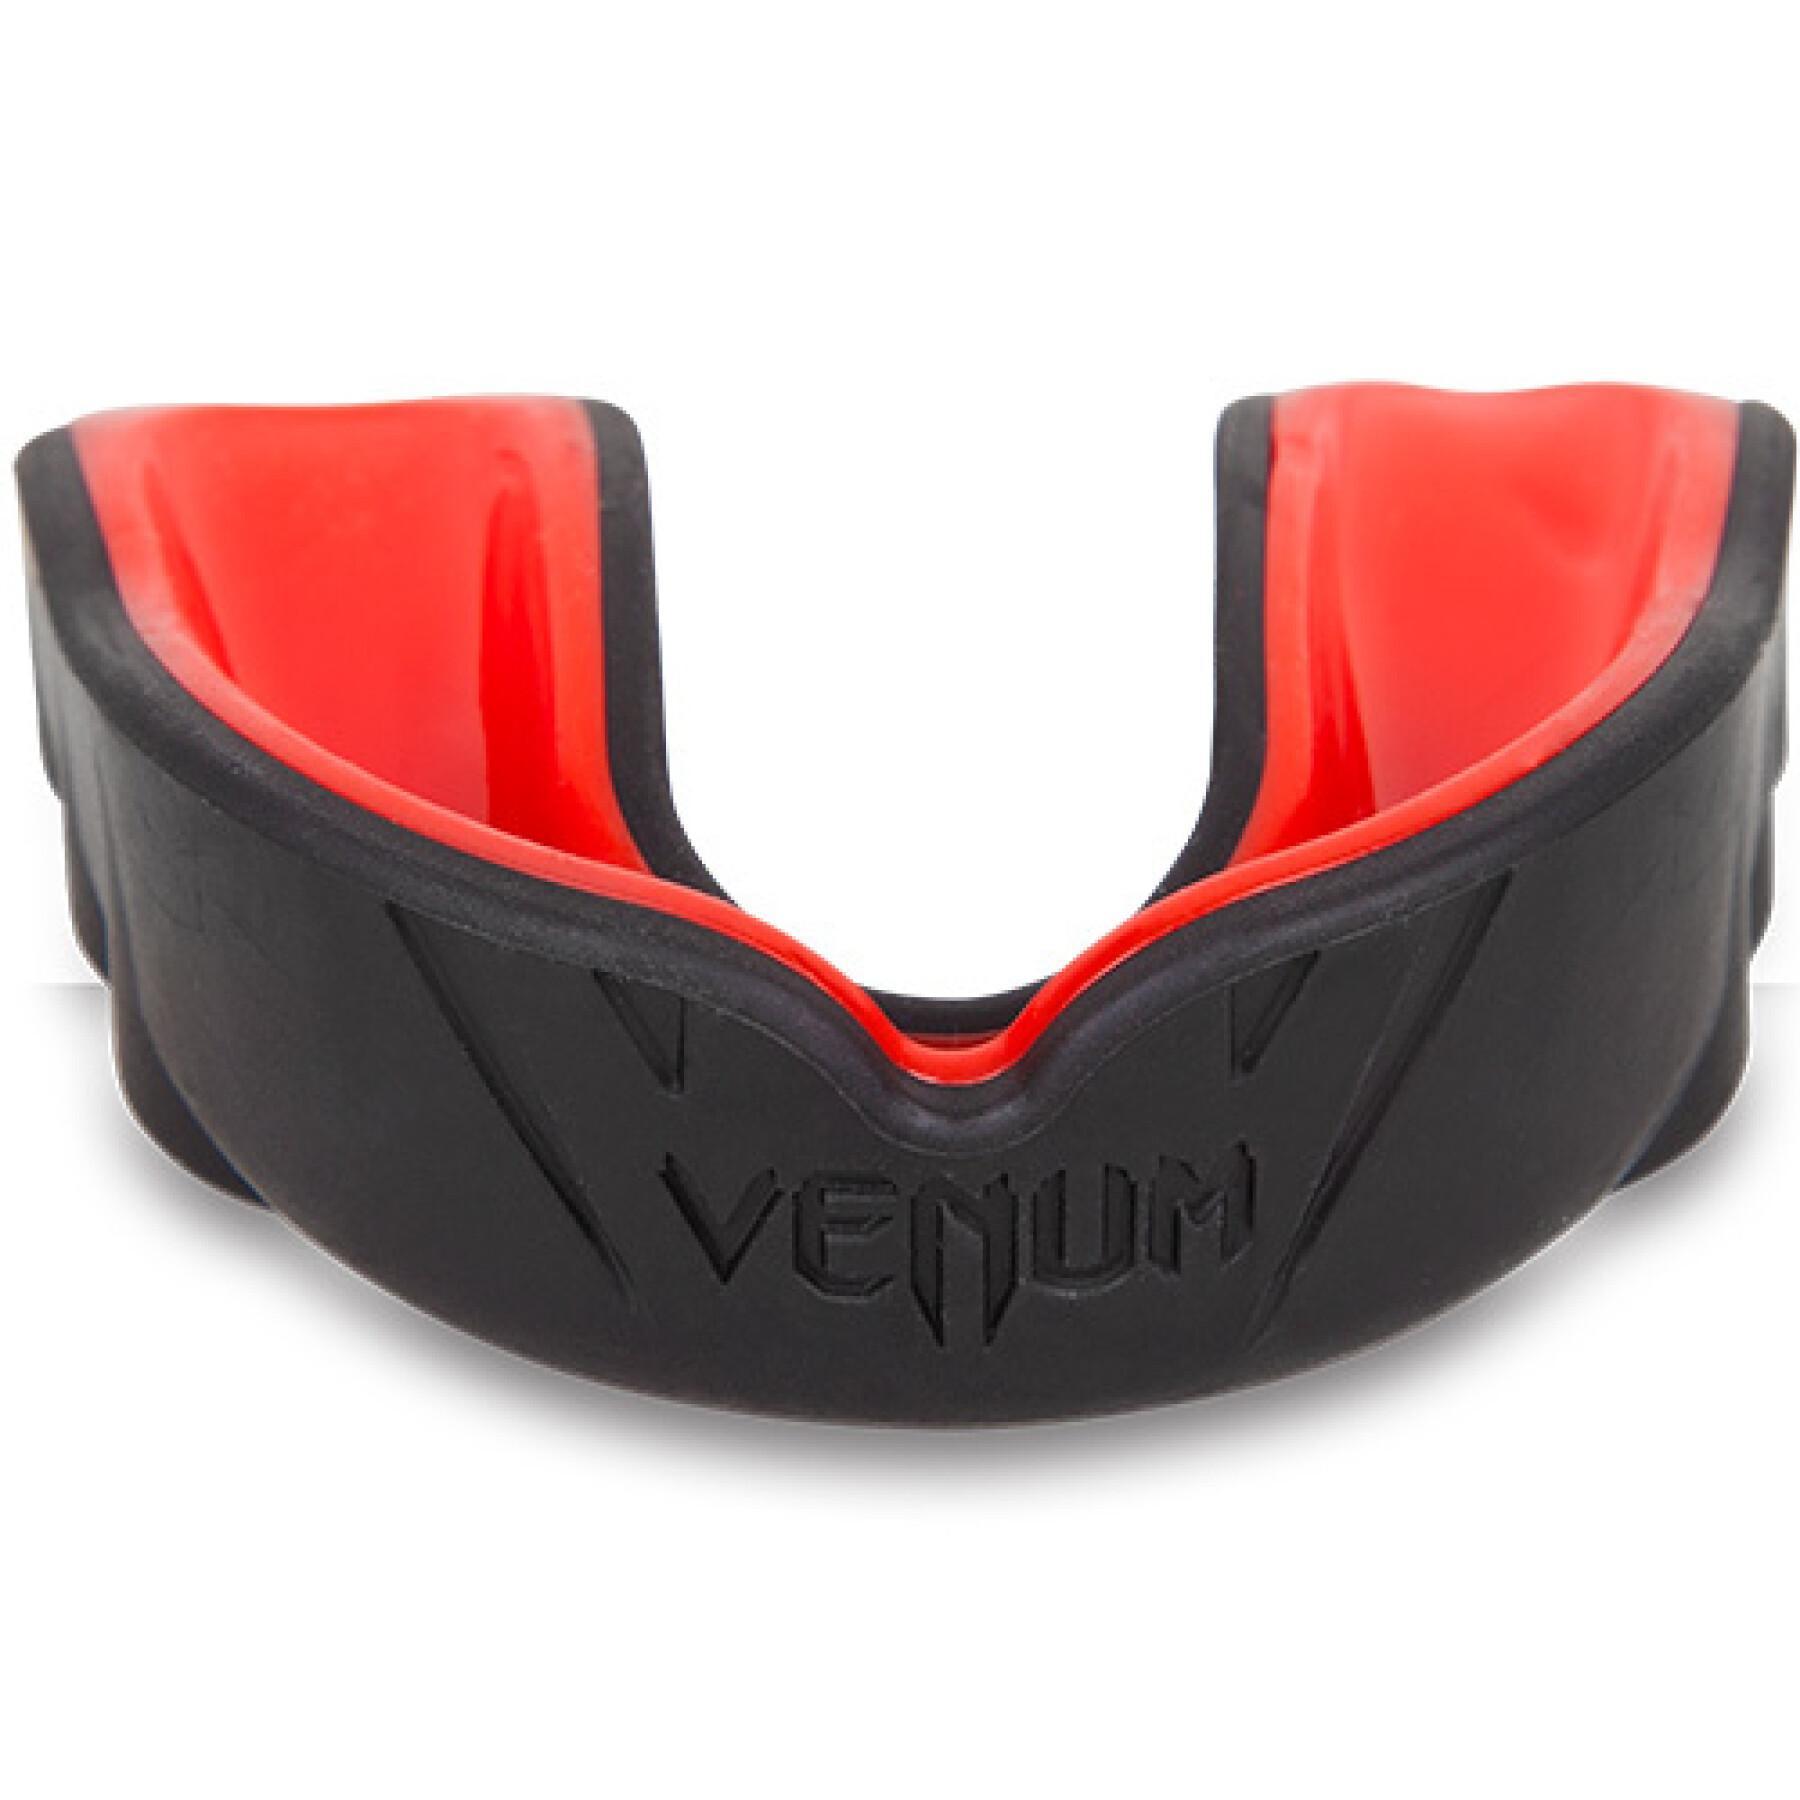 Mouthguards Venum Challenger bi-colors